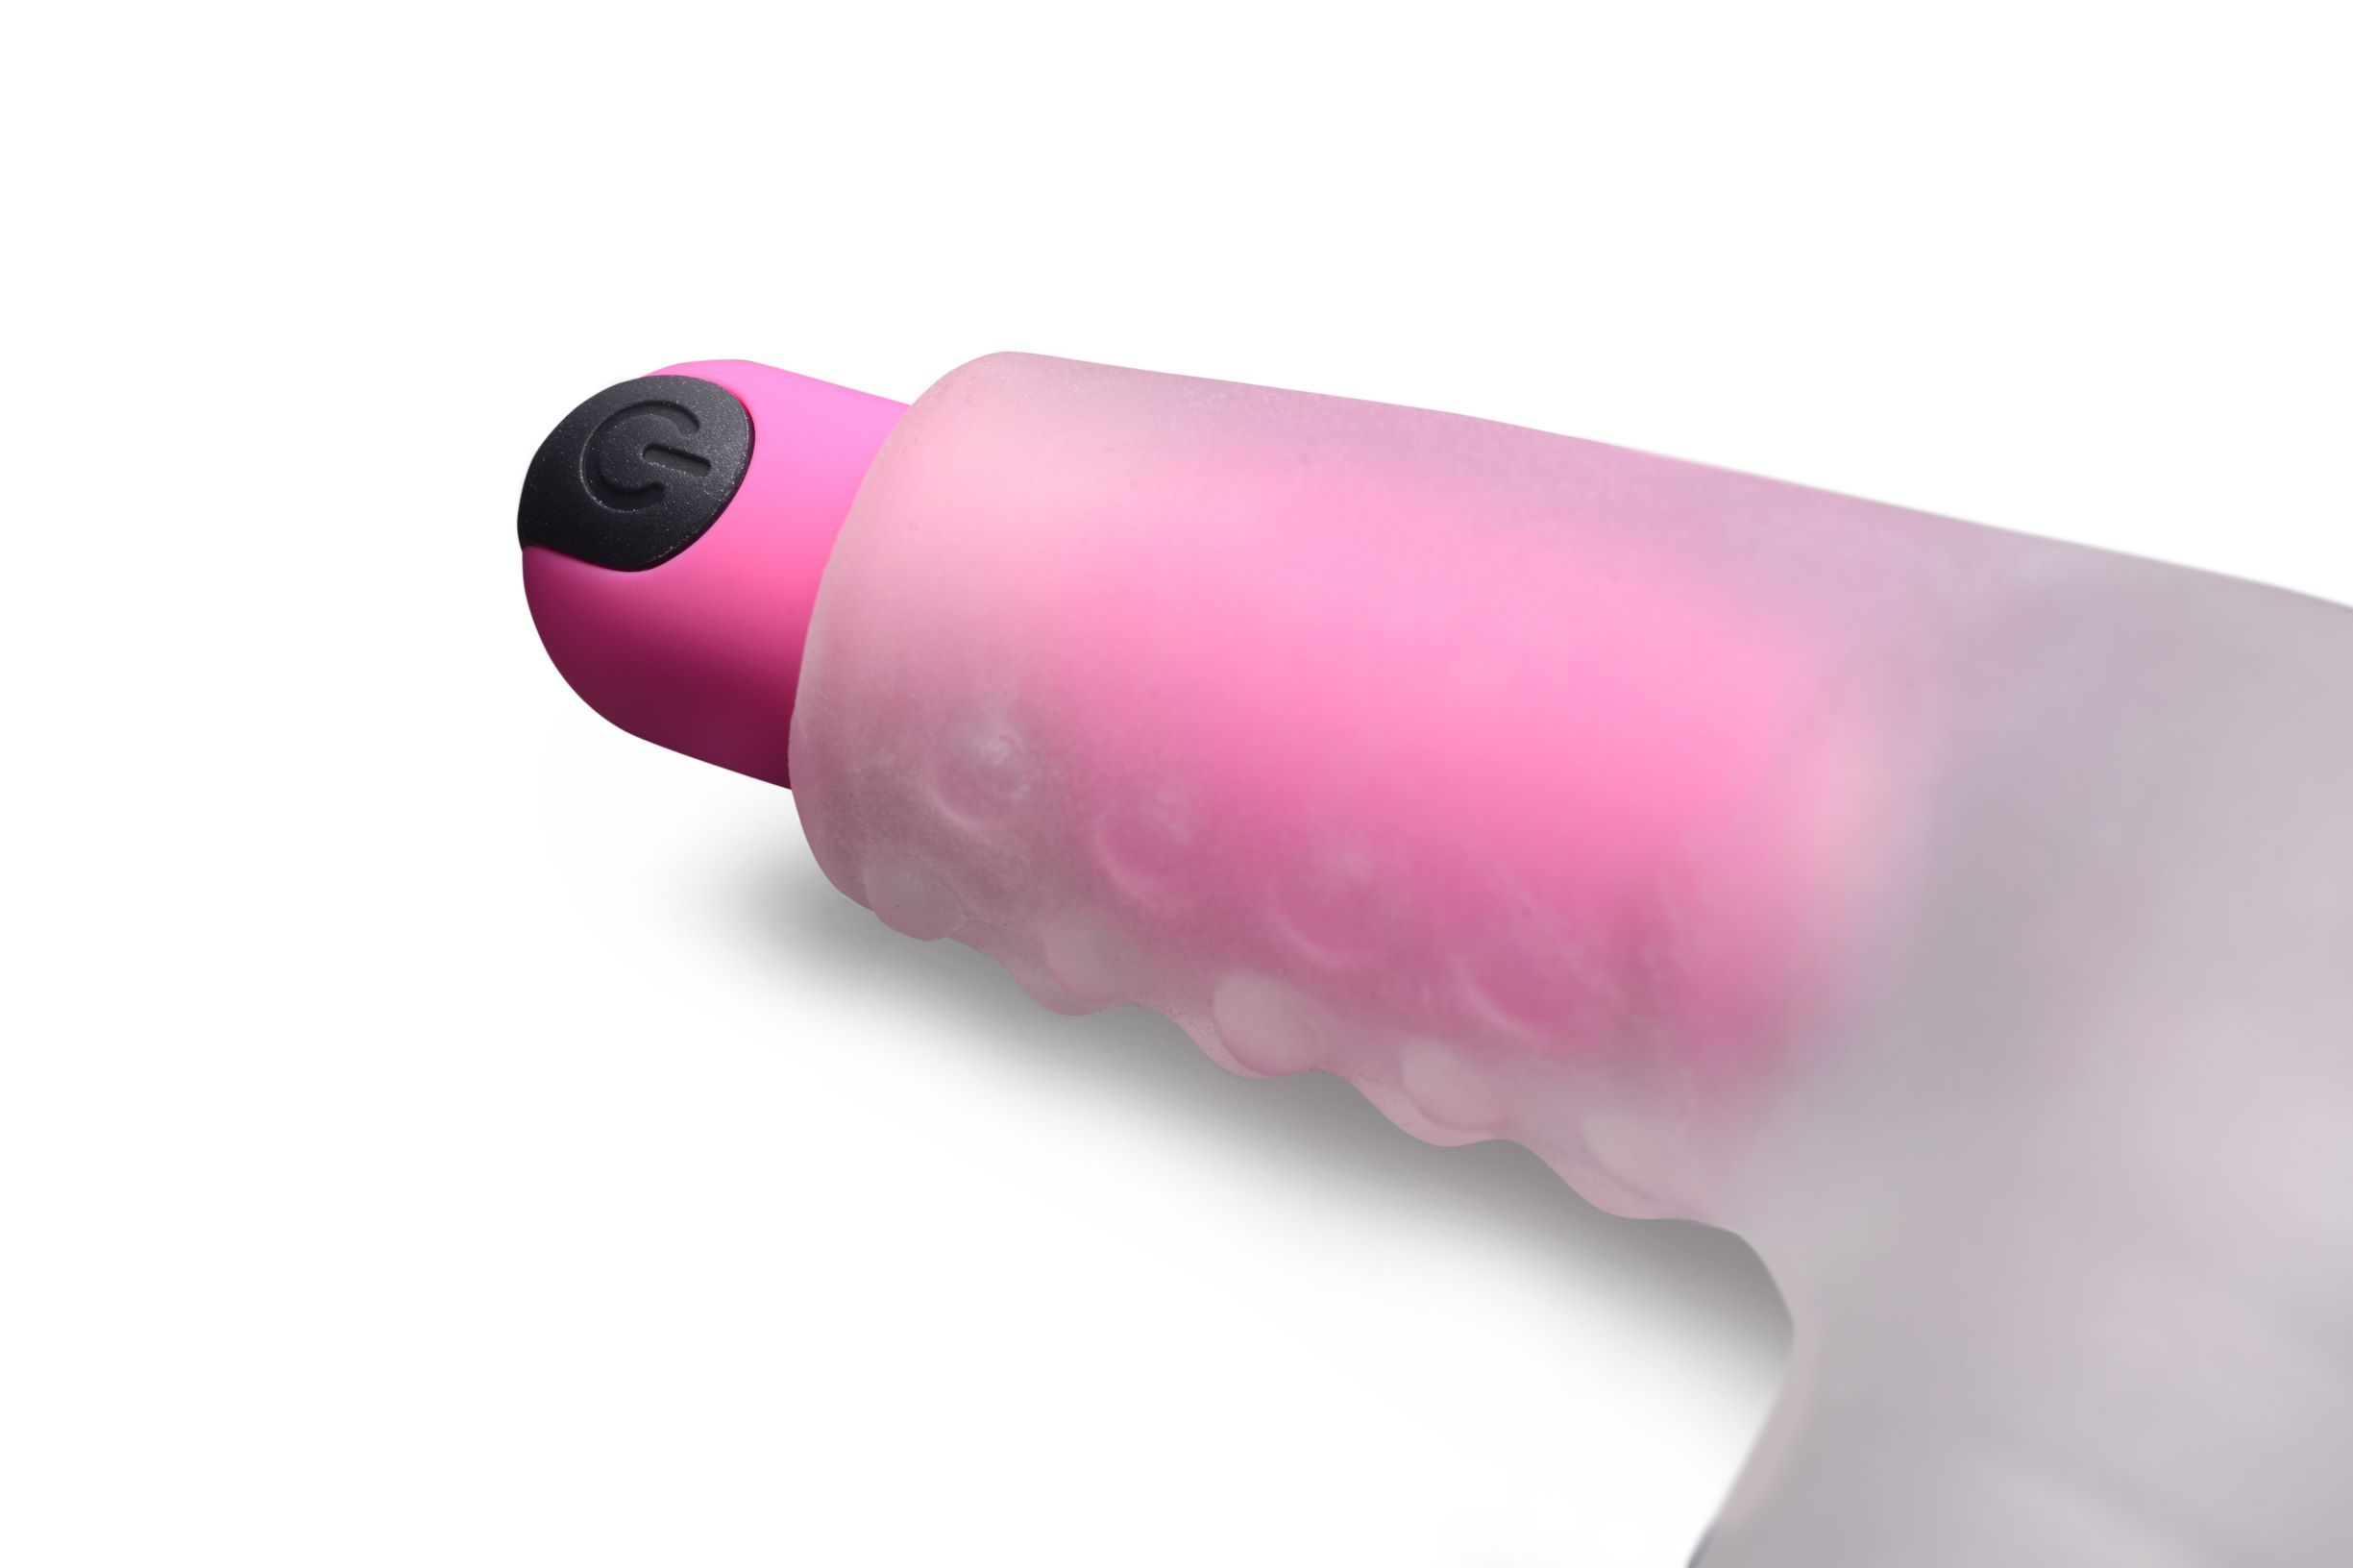 paarvibratoren Fernsteuerung Vagina-Paar-Spielzeug - Tunnel mit Love Vibrierendes FRISKY